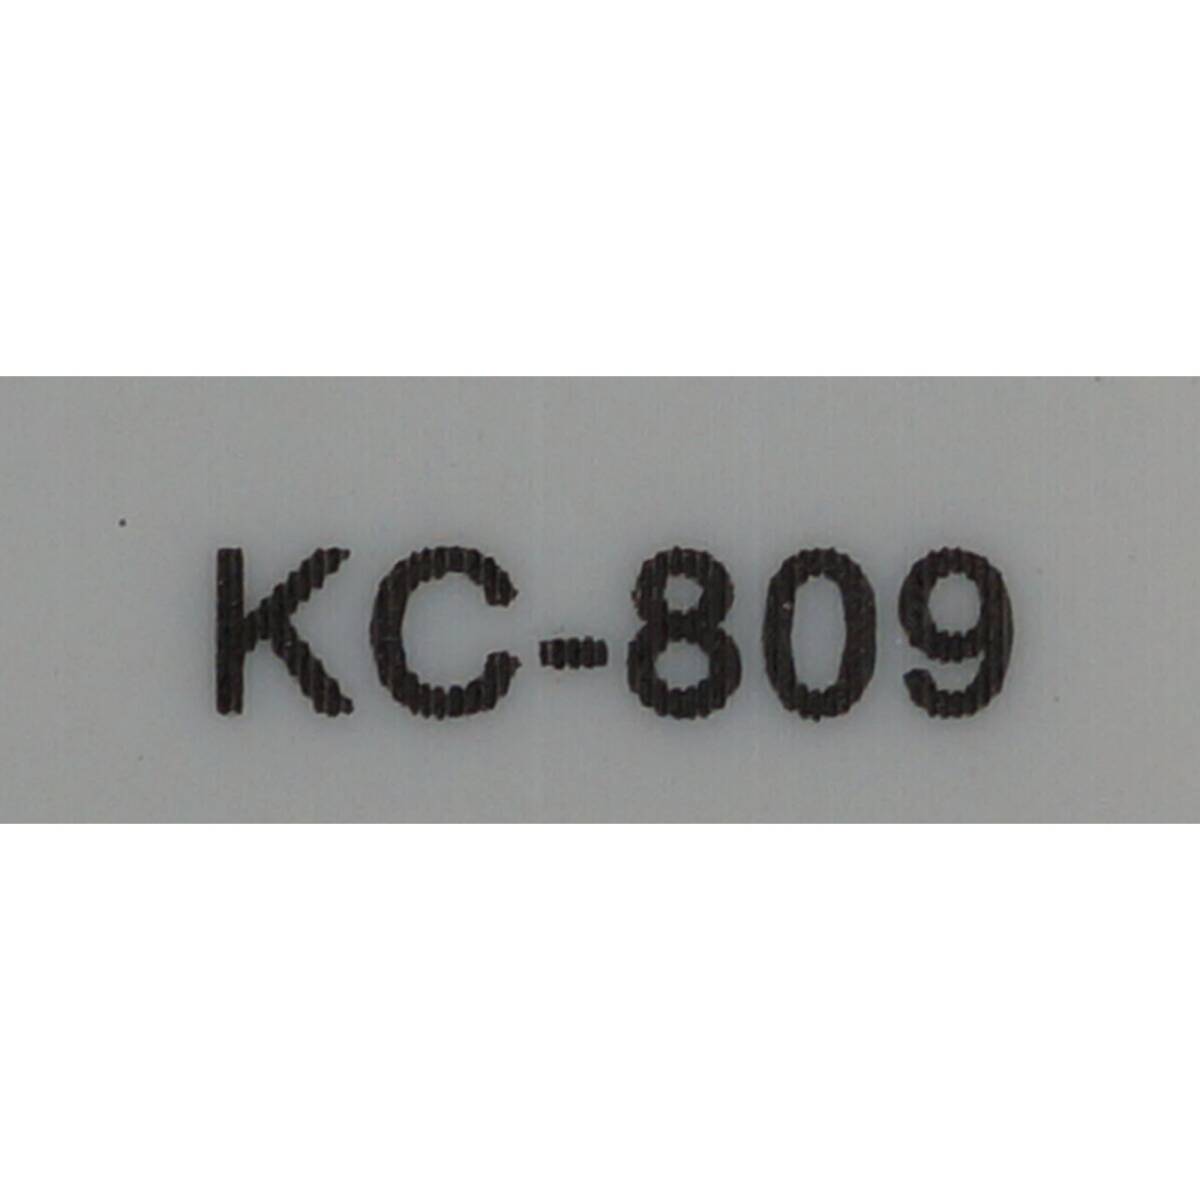 壁掛けCDプレイヤー KC-809 リモコン_画像2